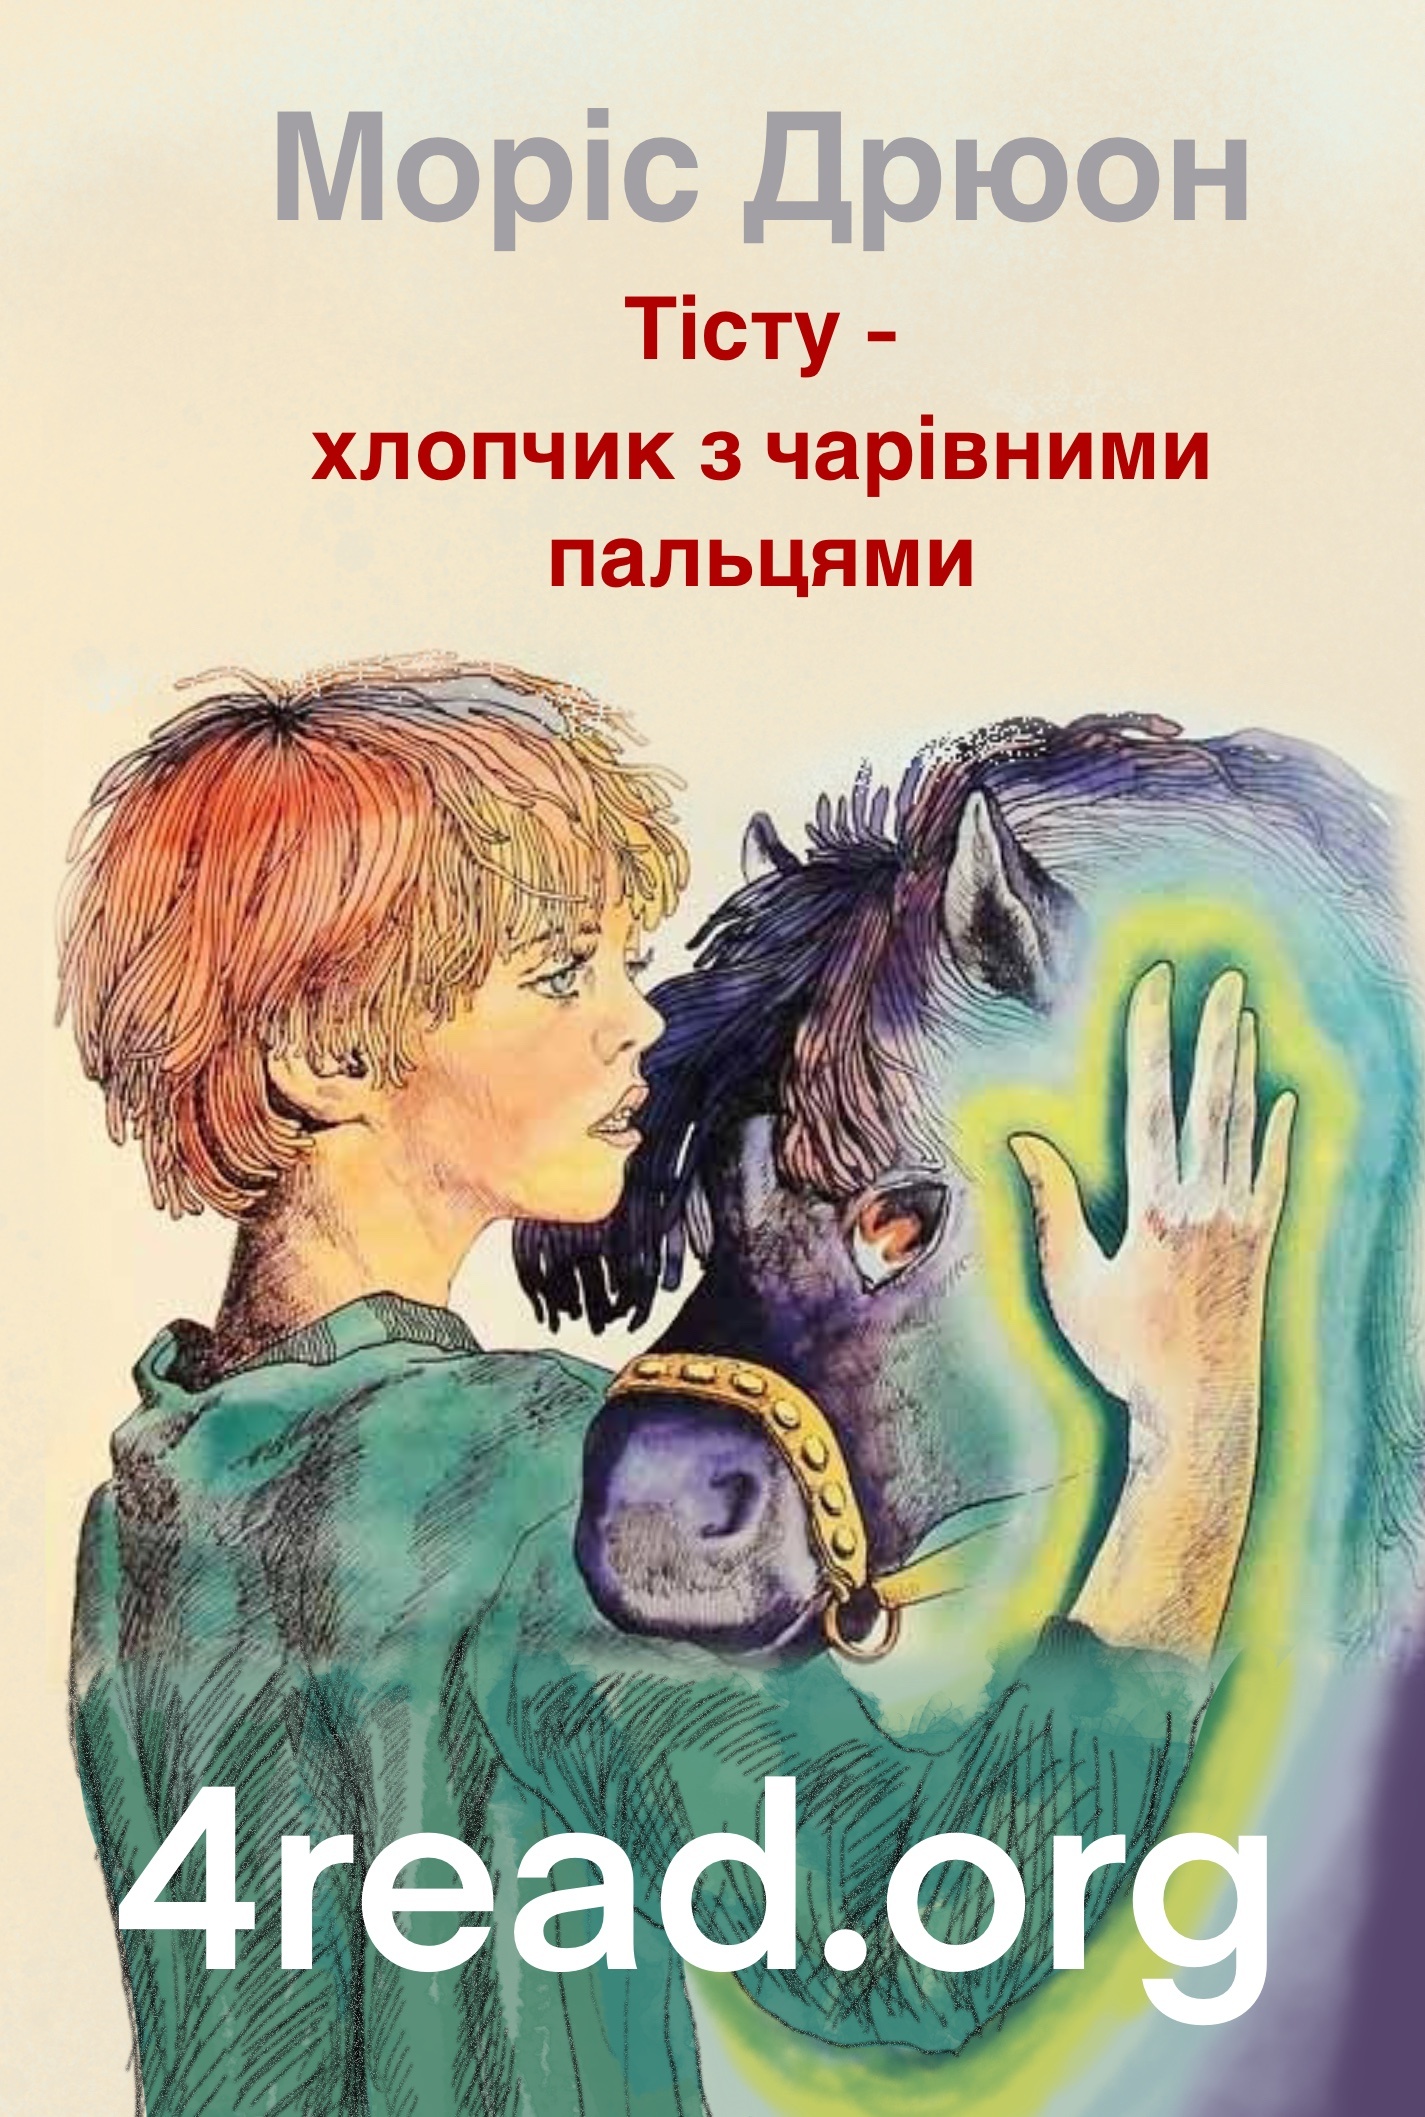 Тісту - хлопчик з чарівними пальцями - Моріс Дрюон - Слухати Книги Українською Онлайн Безкоштовно 📘 Knigi-Audio.com/uk/